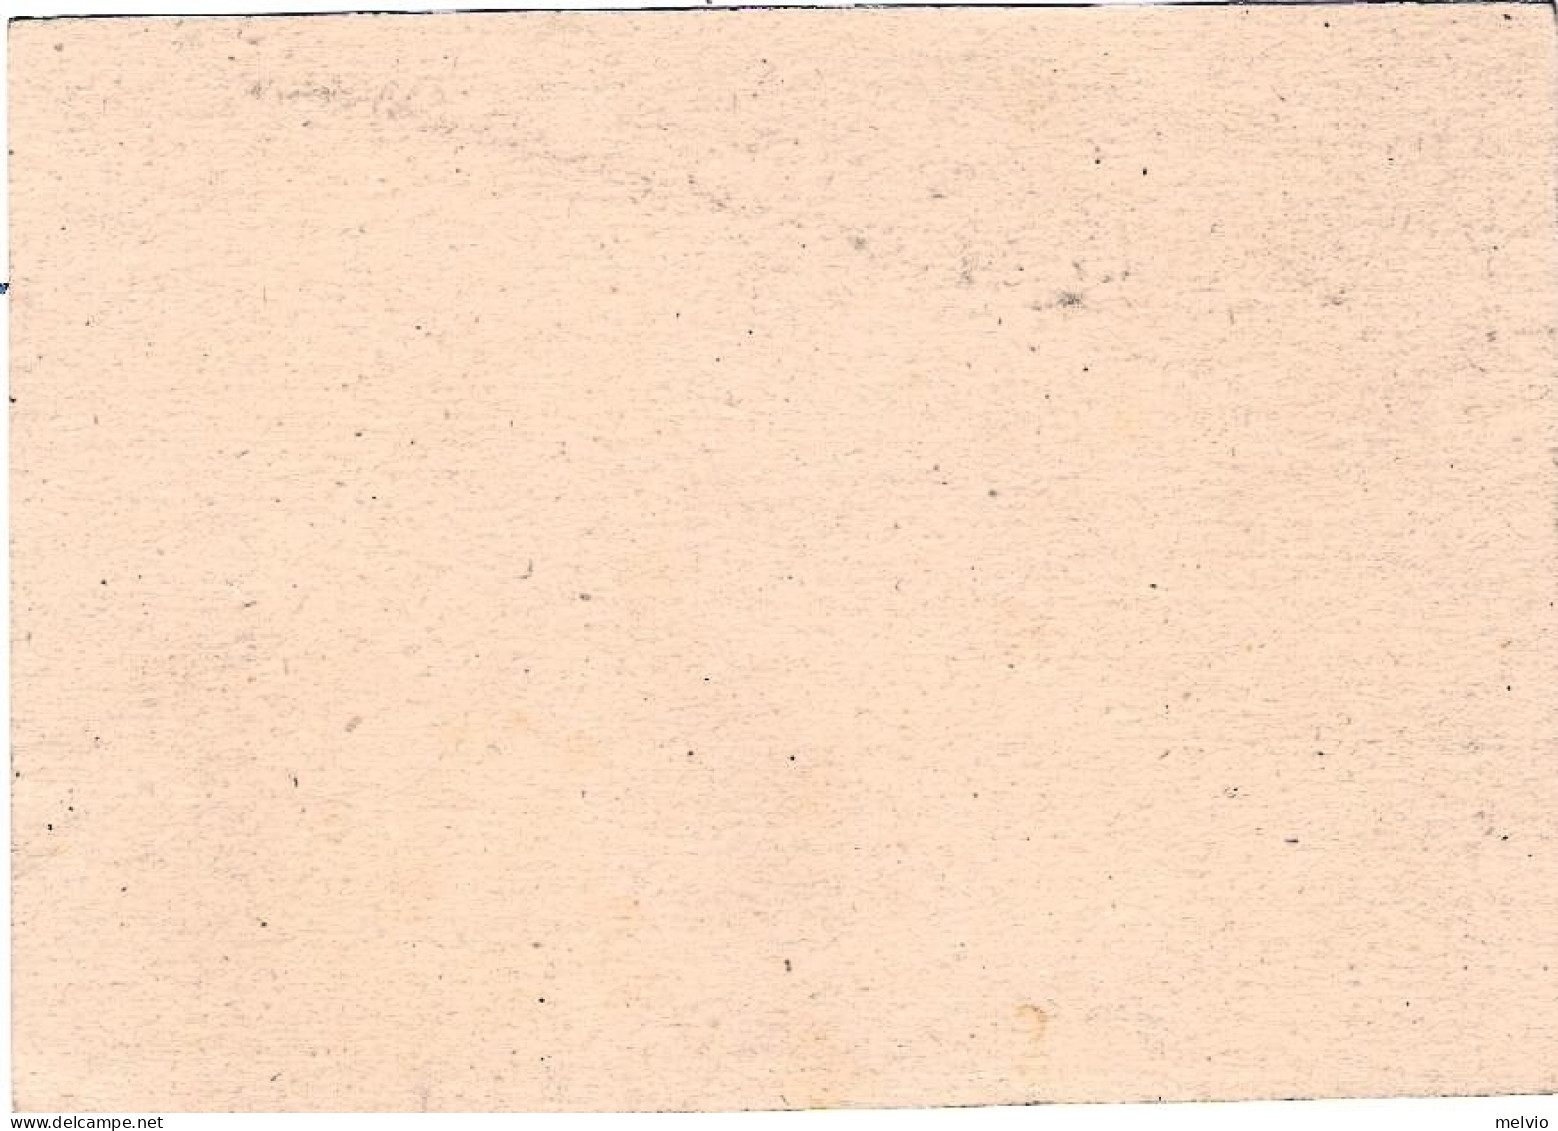 1942-cartolina Postale 15c. Nuova "Vinceremo" - Stamped Stationery